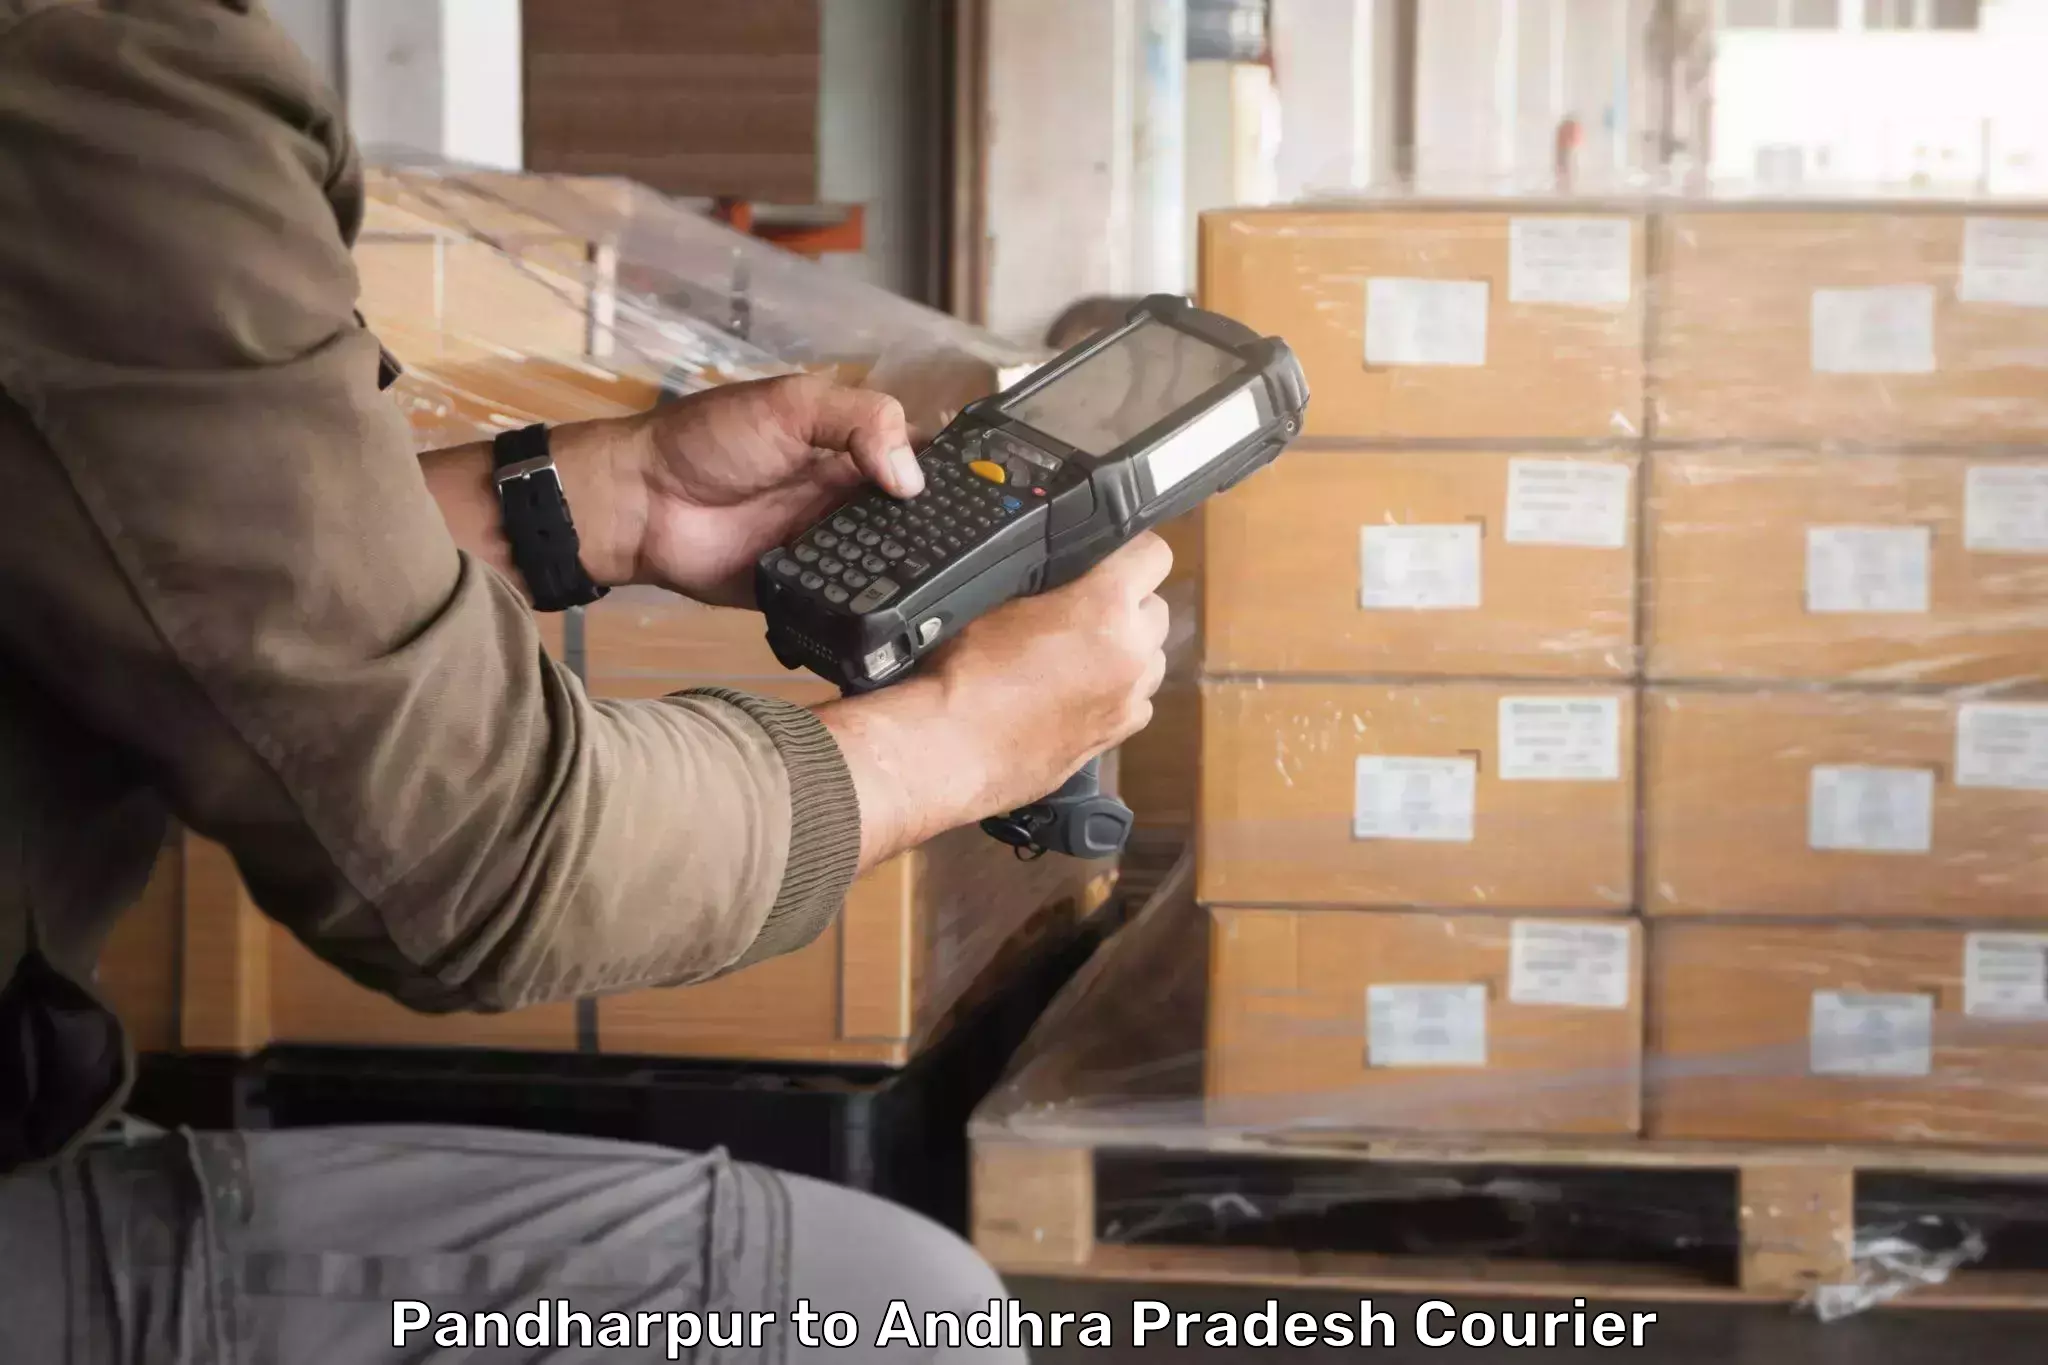 Global shipping networks Pandharpur to Andhra Pradesh